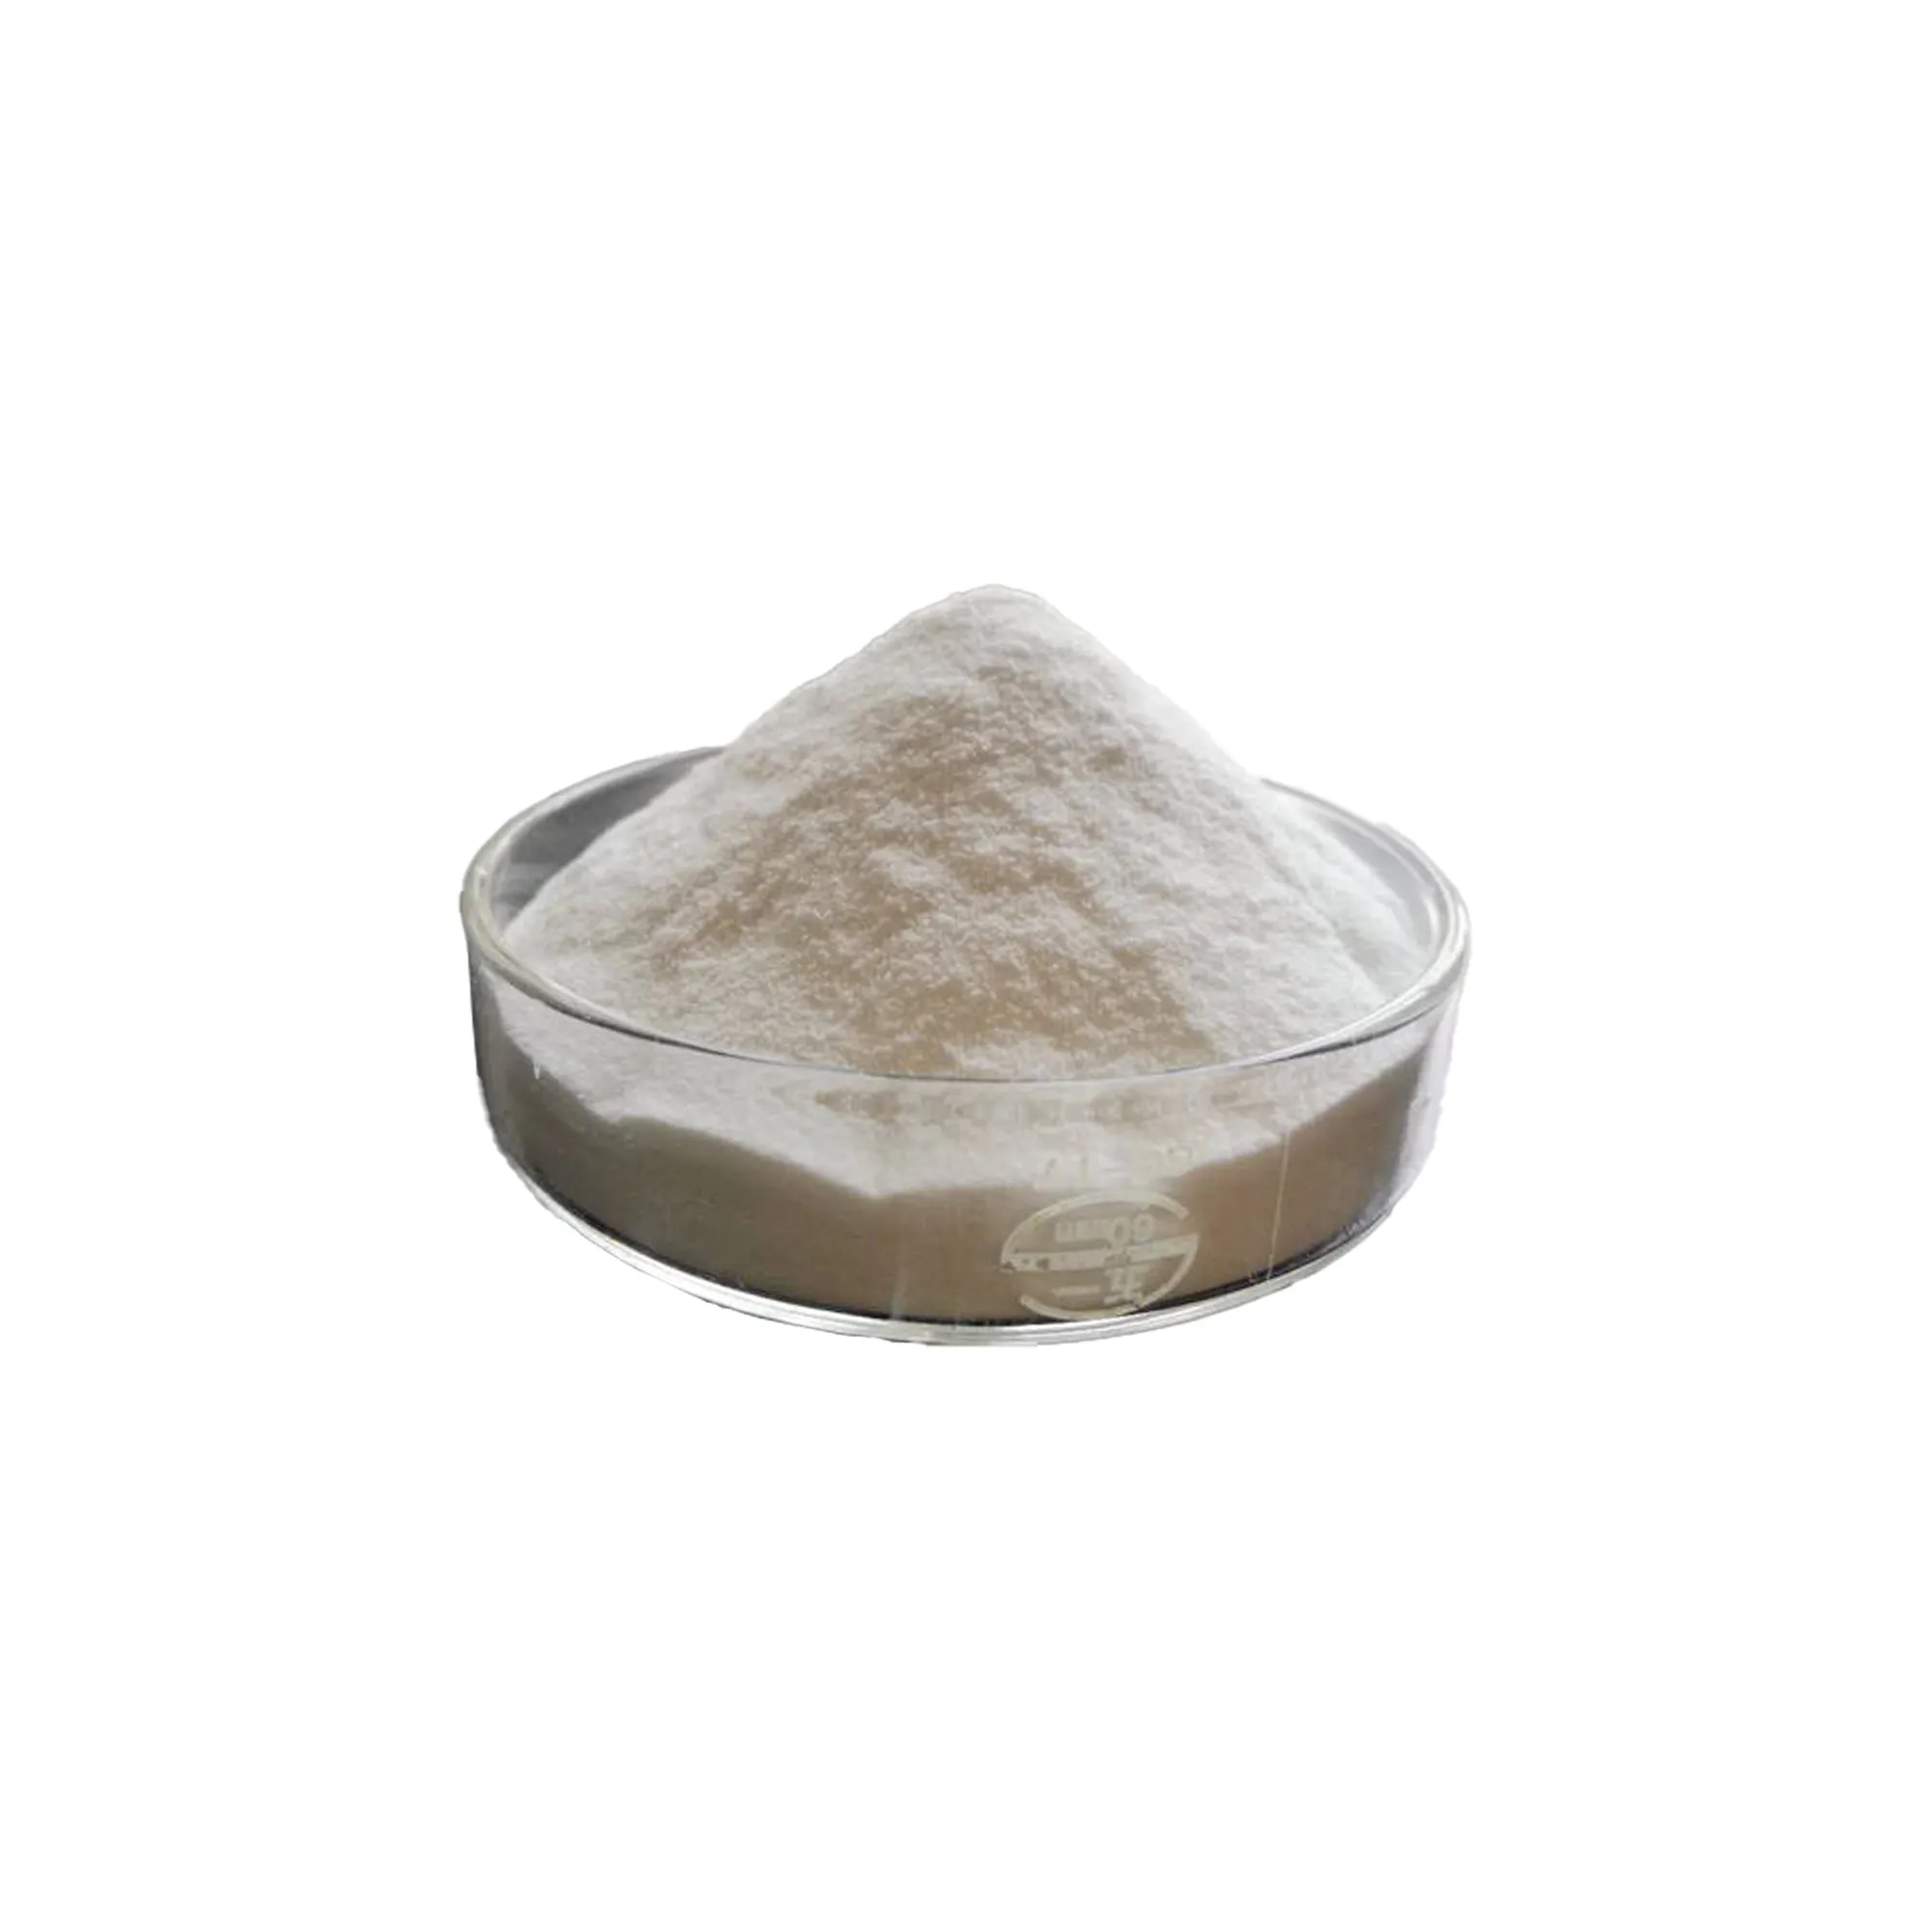 バルクセール食品/工業用増粘剤CMC洗剤用肥料ナトリウムカルボキシメチルセルロースナトリウム